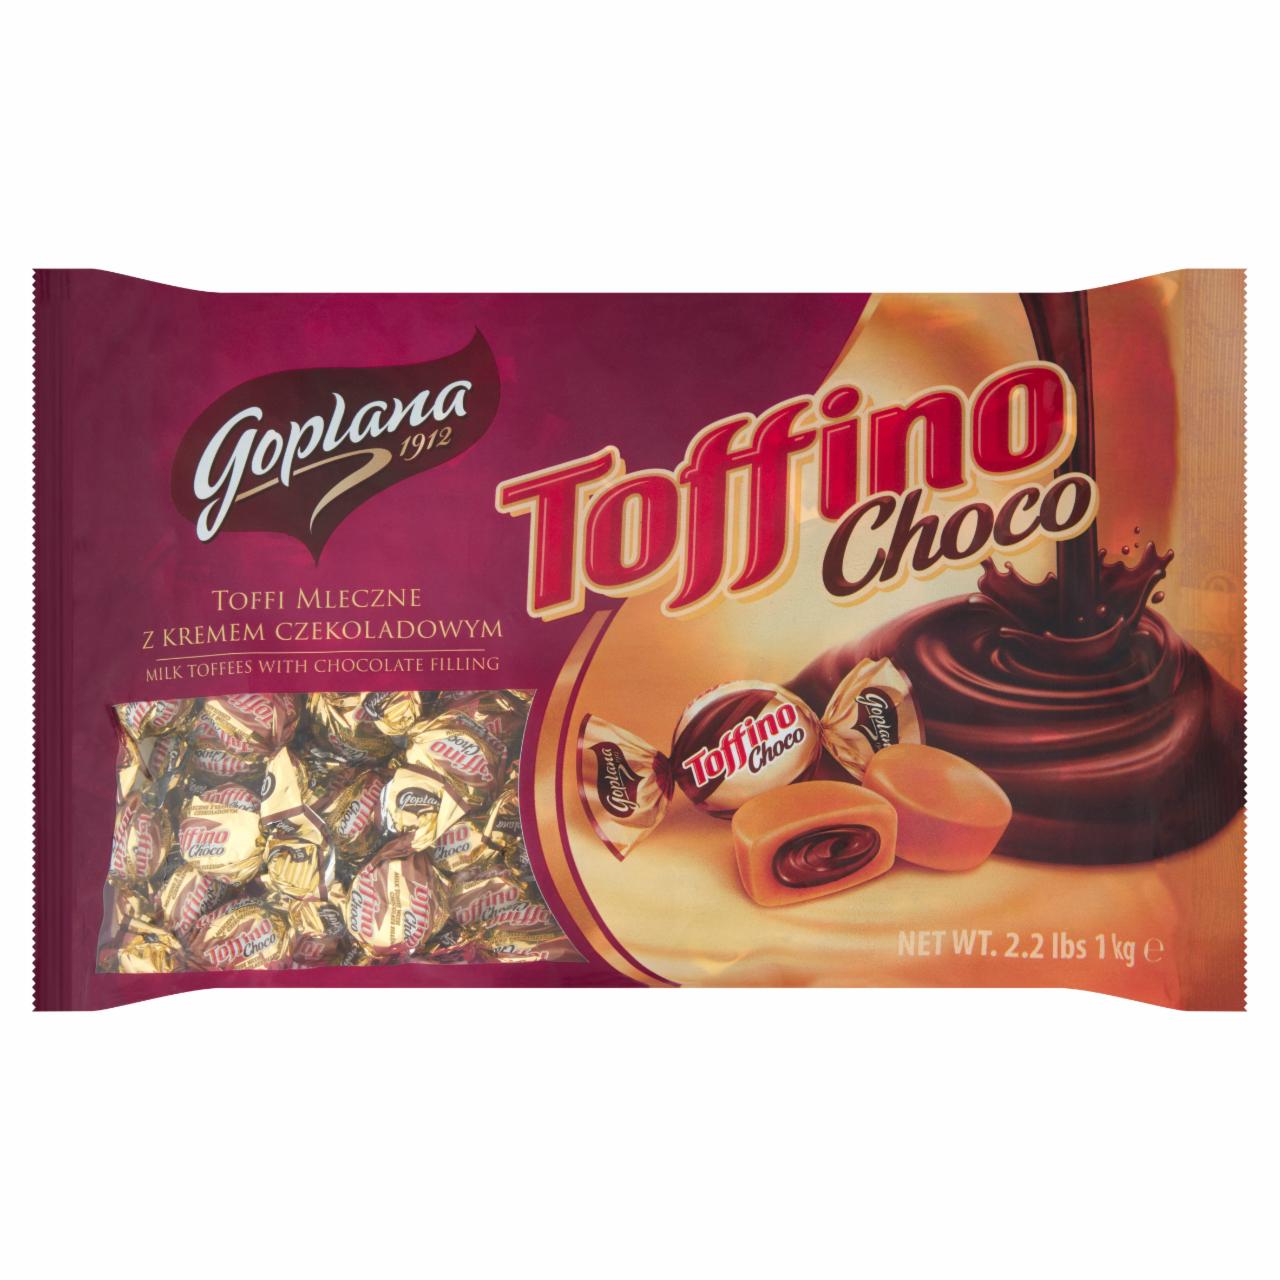 Zdjęcia - Toffino Choco Toffi mleczne z kremem czekoladowym Goplana